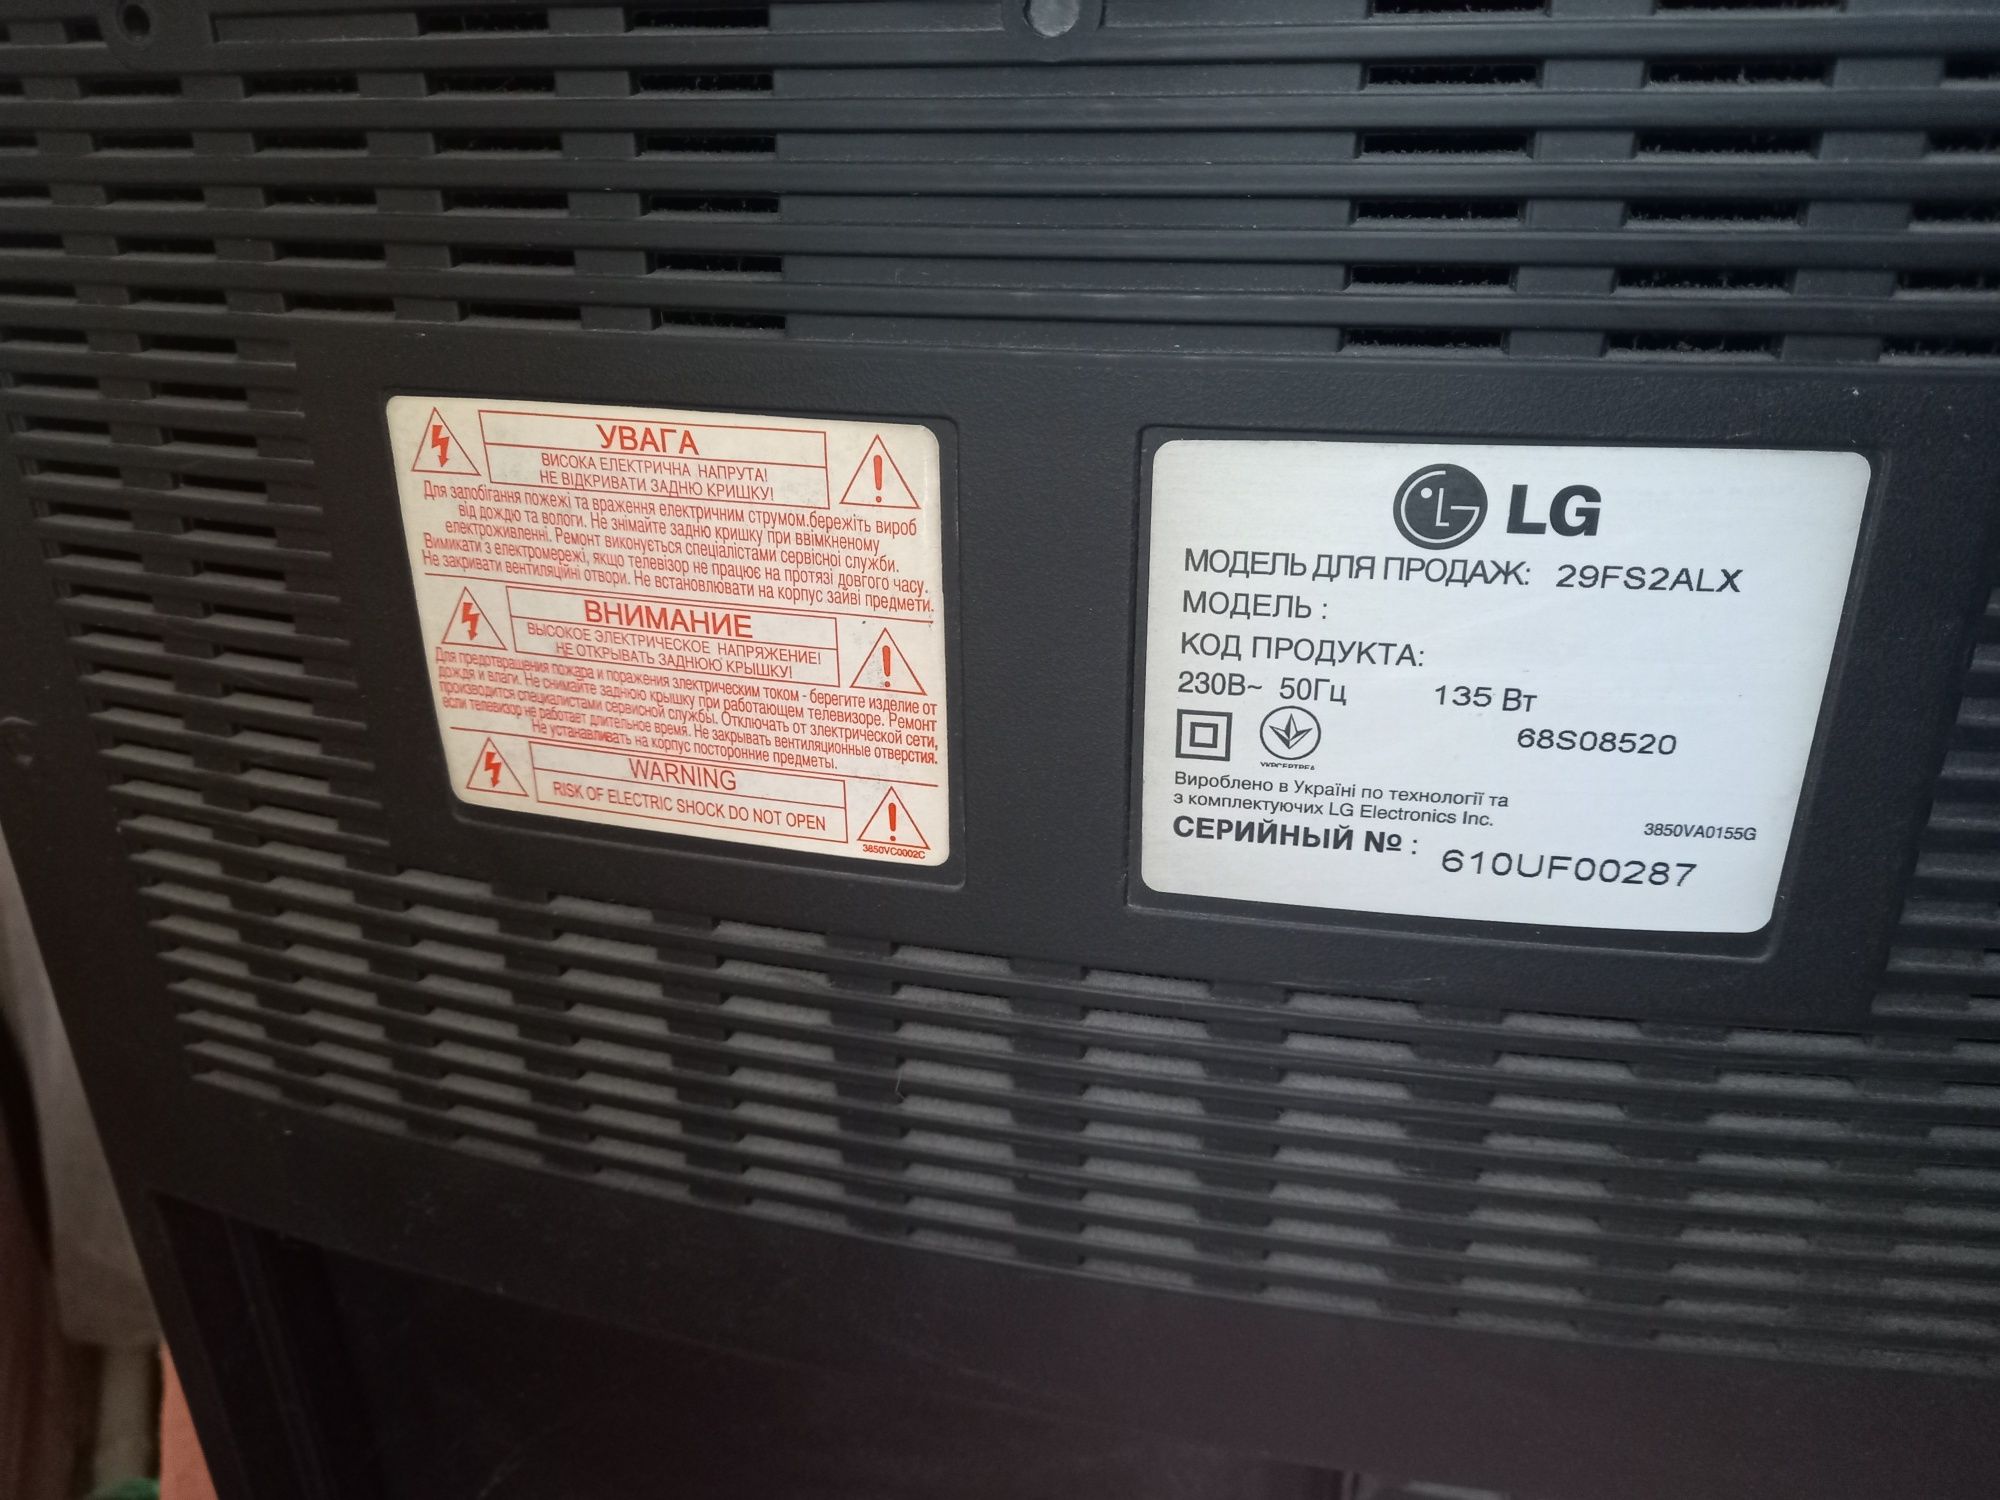 Продам телевизор LG 29FS2ALX